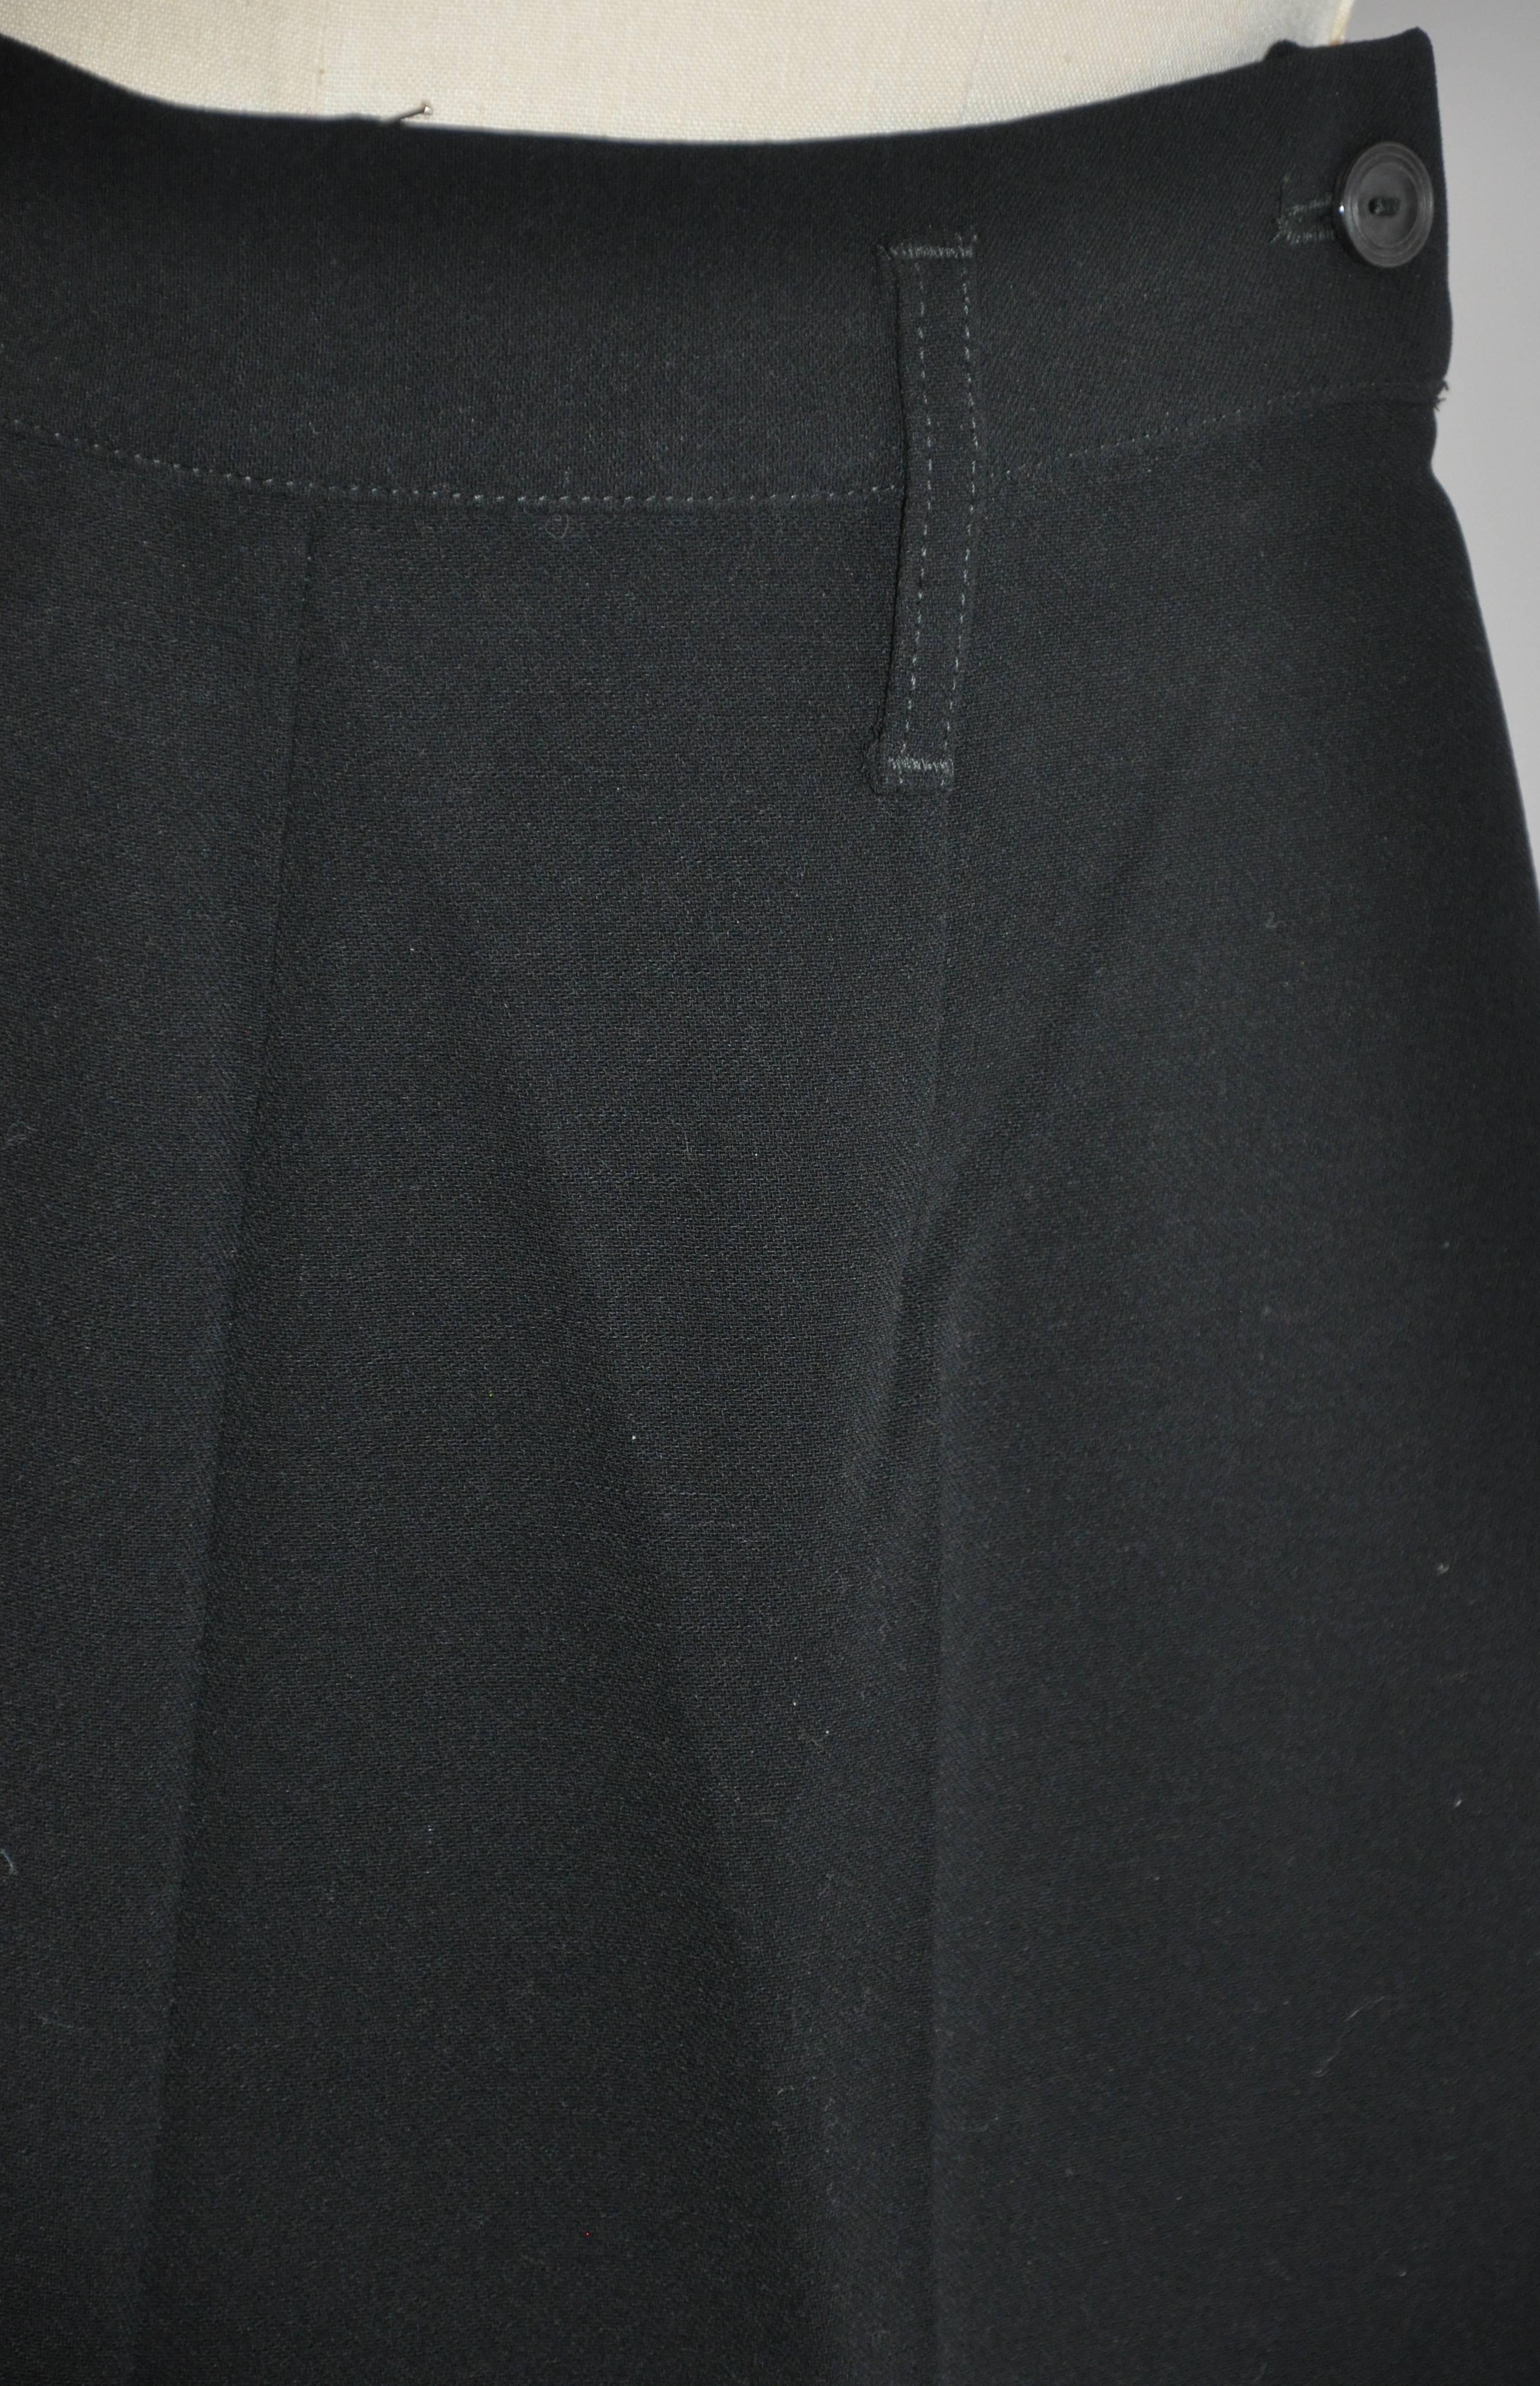       Le pantalon noir à taille haute Jean Paul Gaultier est un mélange de 99 % de laine et de 1 % d'élasthanne pour un ajustement parfait. Il est doté d'une fermeture à glissière invisible sur le côté et mesure 7 1/2